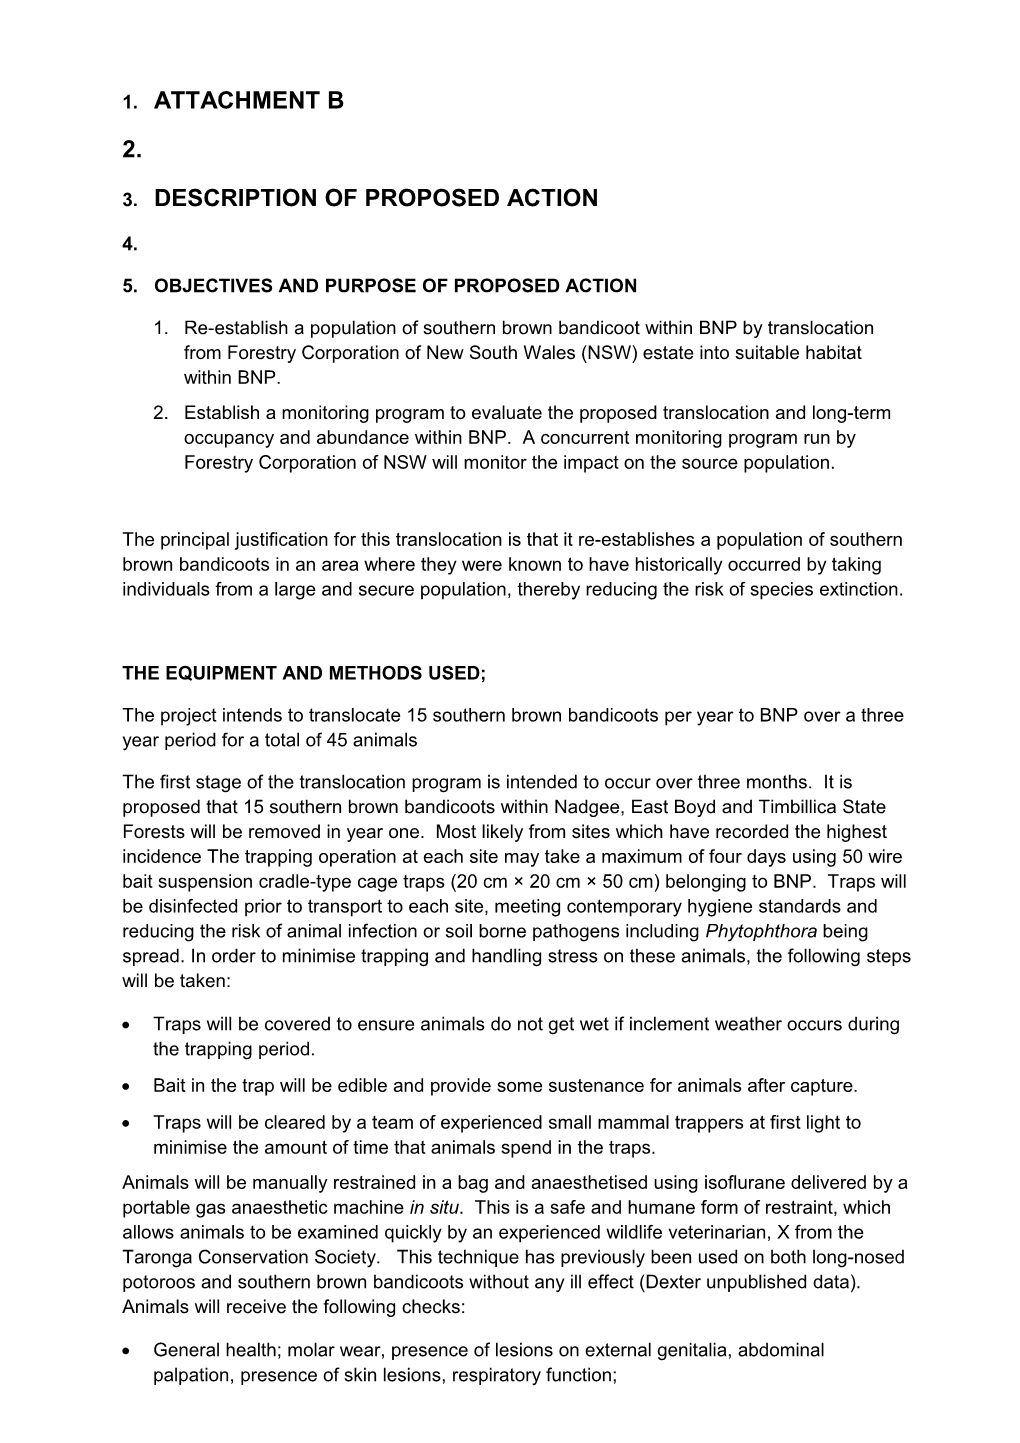 E2015-0103 - Description of Proposed Action